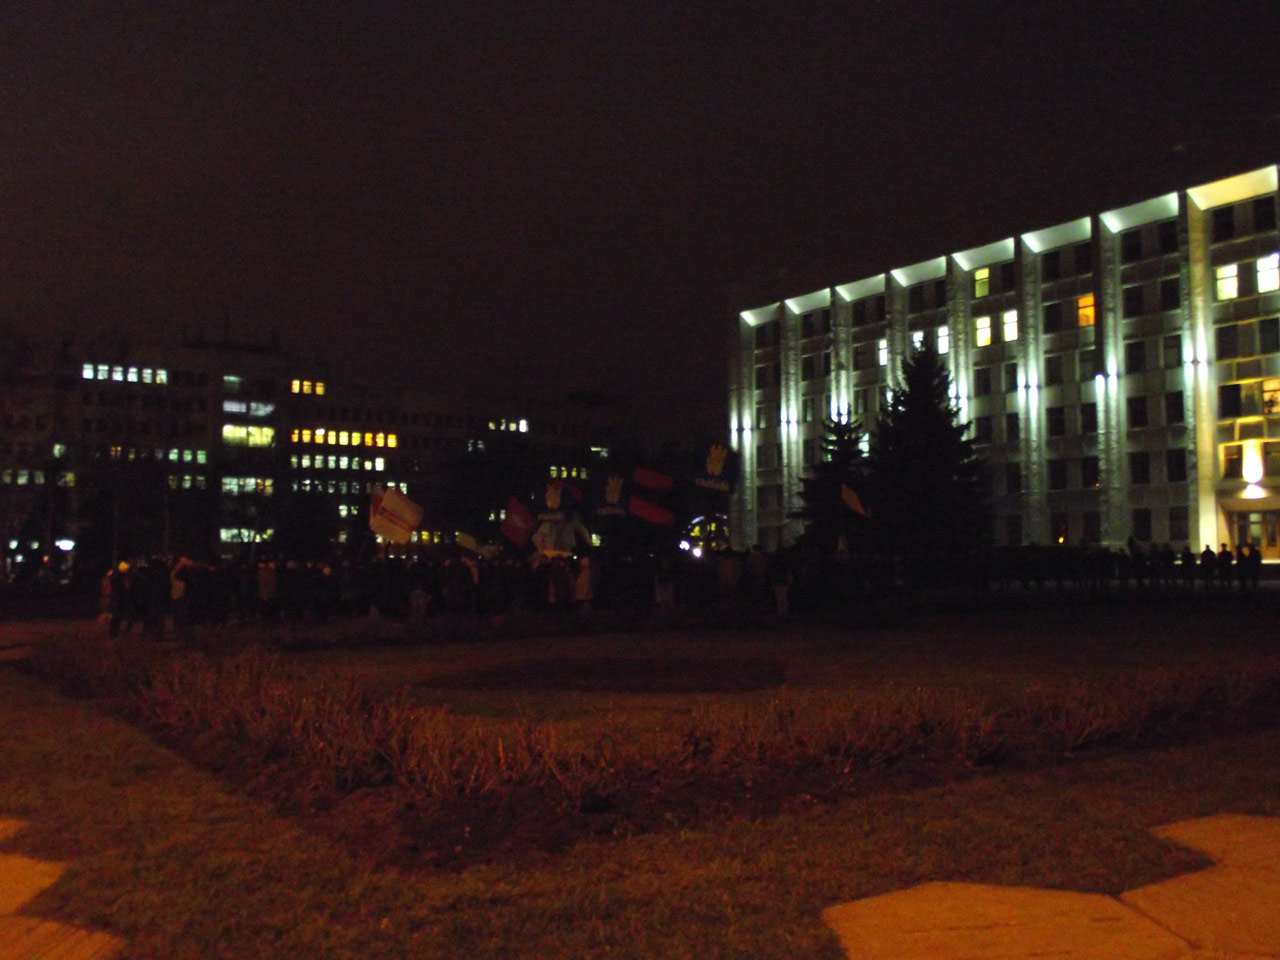 Розпочинаємо фоторепортаж із не дуже примітної фотографії. 22 листопада 2013 року. Мітинг у Полтаві розпочався на наступний день після протесту у Києві. На площі перед Полтавською адміністрацією зібралося близько двох десятків людей із символікою Європейському союзу.